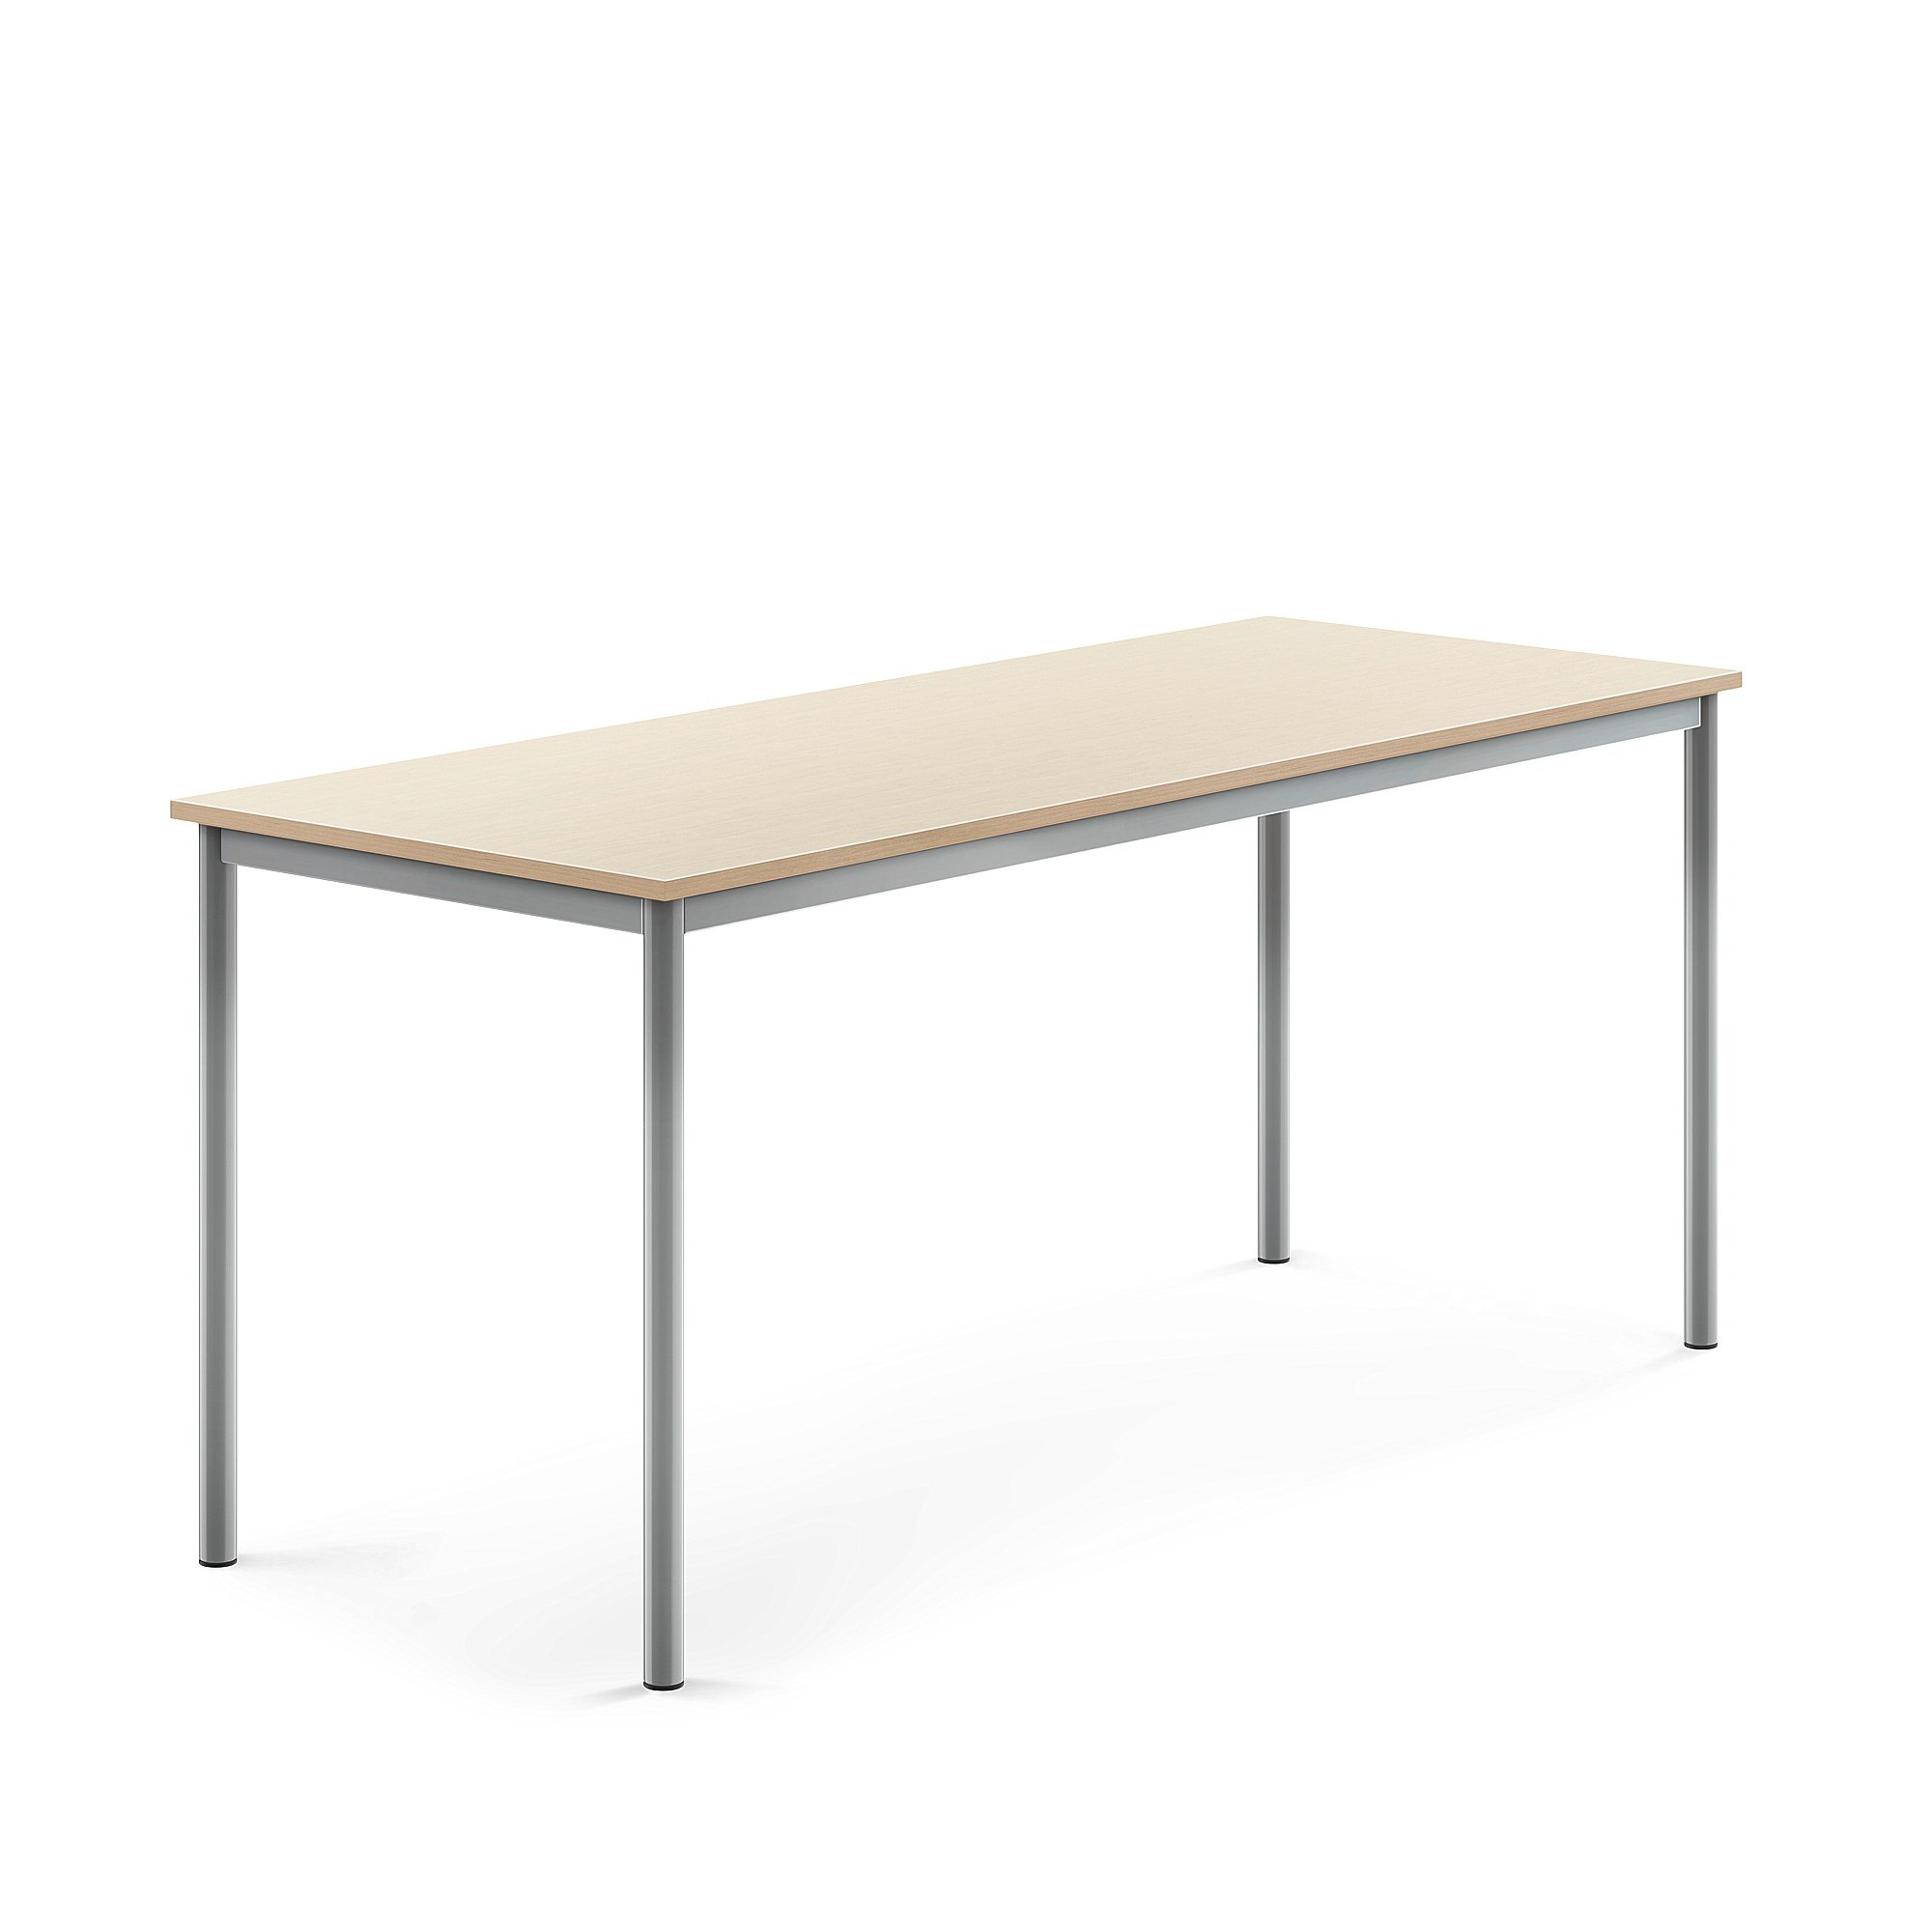 Stůl SONITUS, 1800x700x760 mm, stříbrné nohy, HPL deska tlumící hluk, bříza